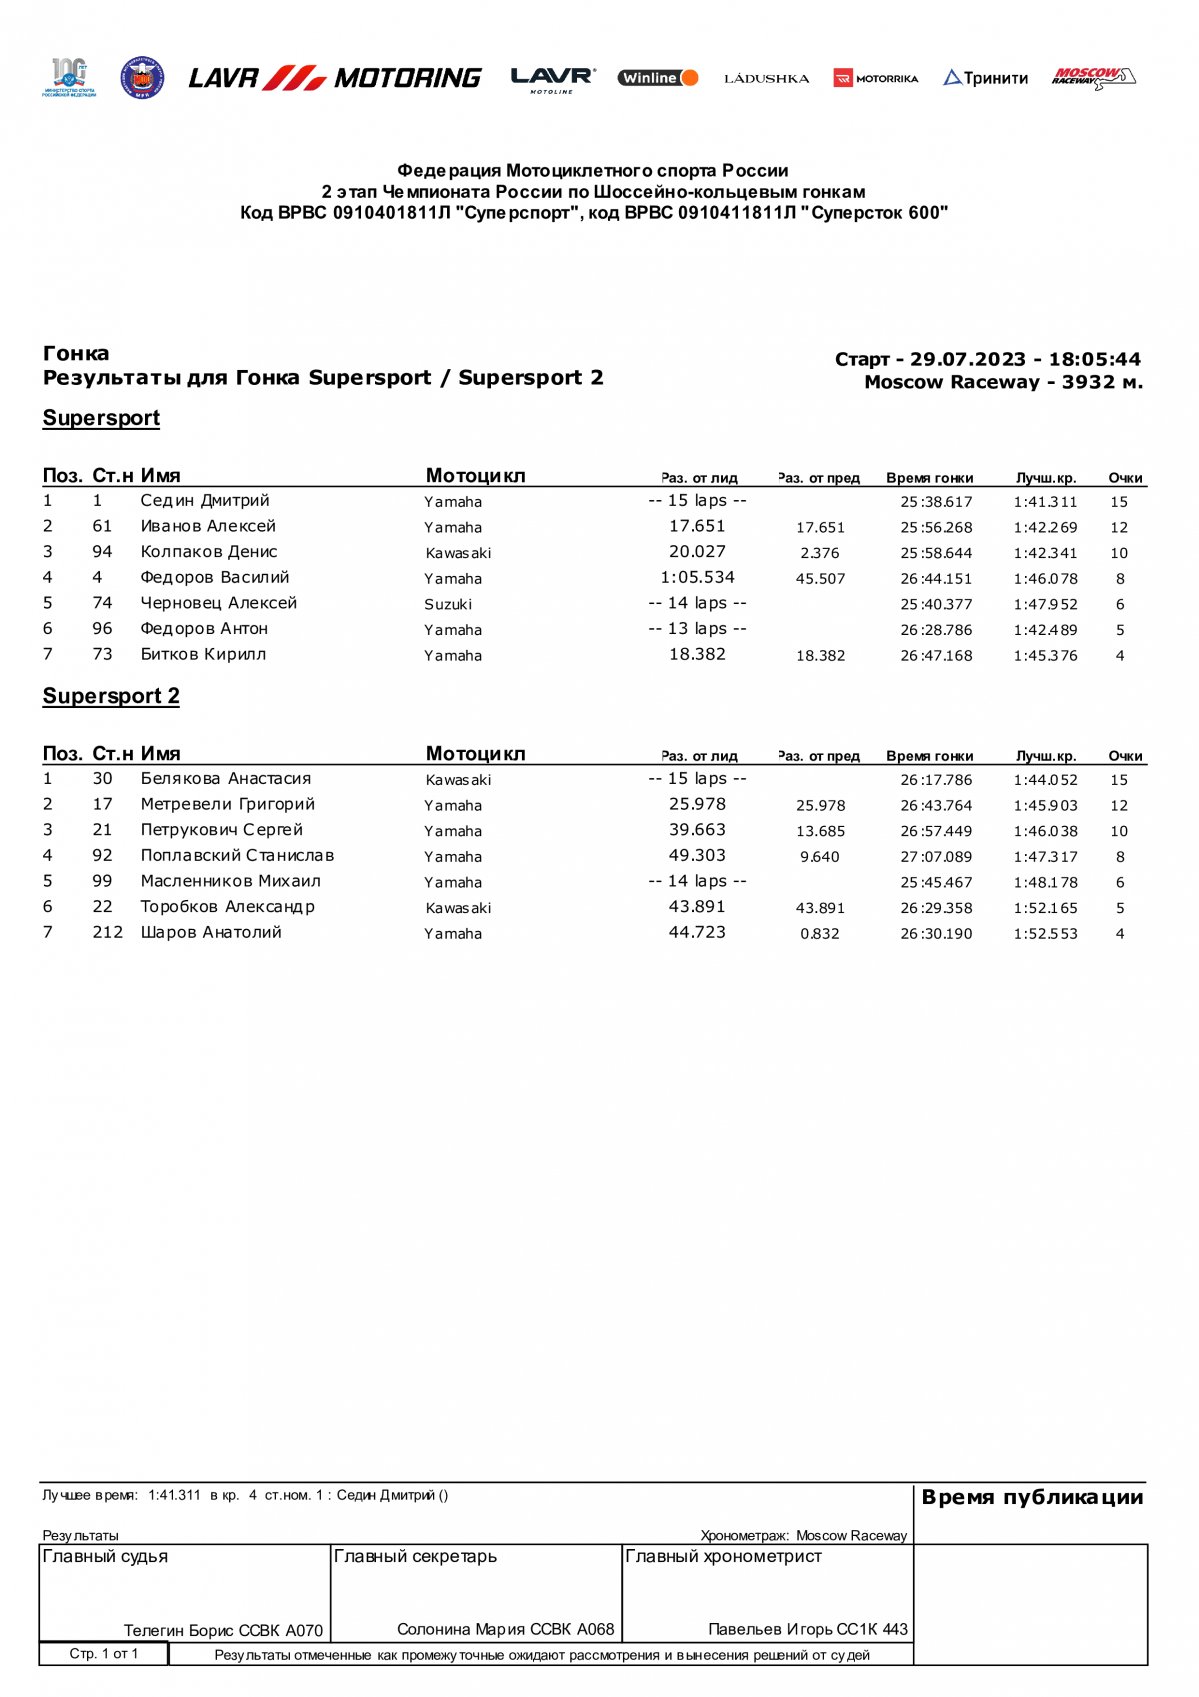 Результаты гонки 3 этапа ЧР SSP/SSP2, Moscow Raceway (29.07.2023)